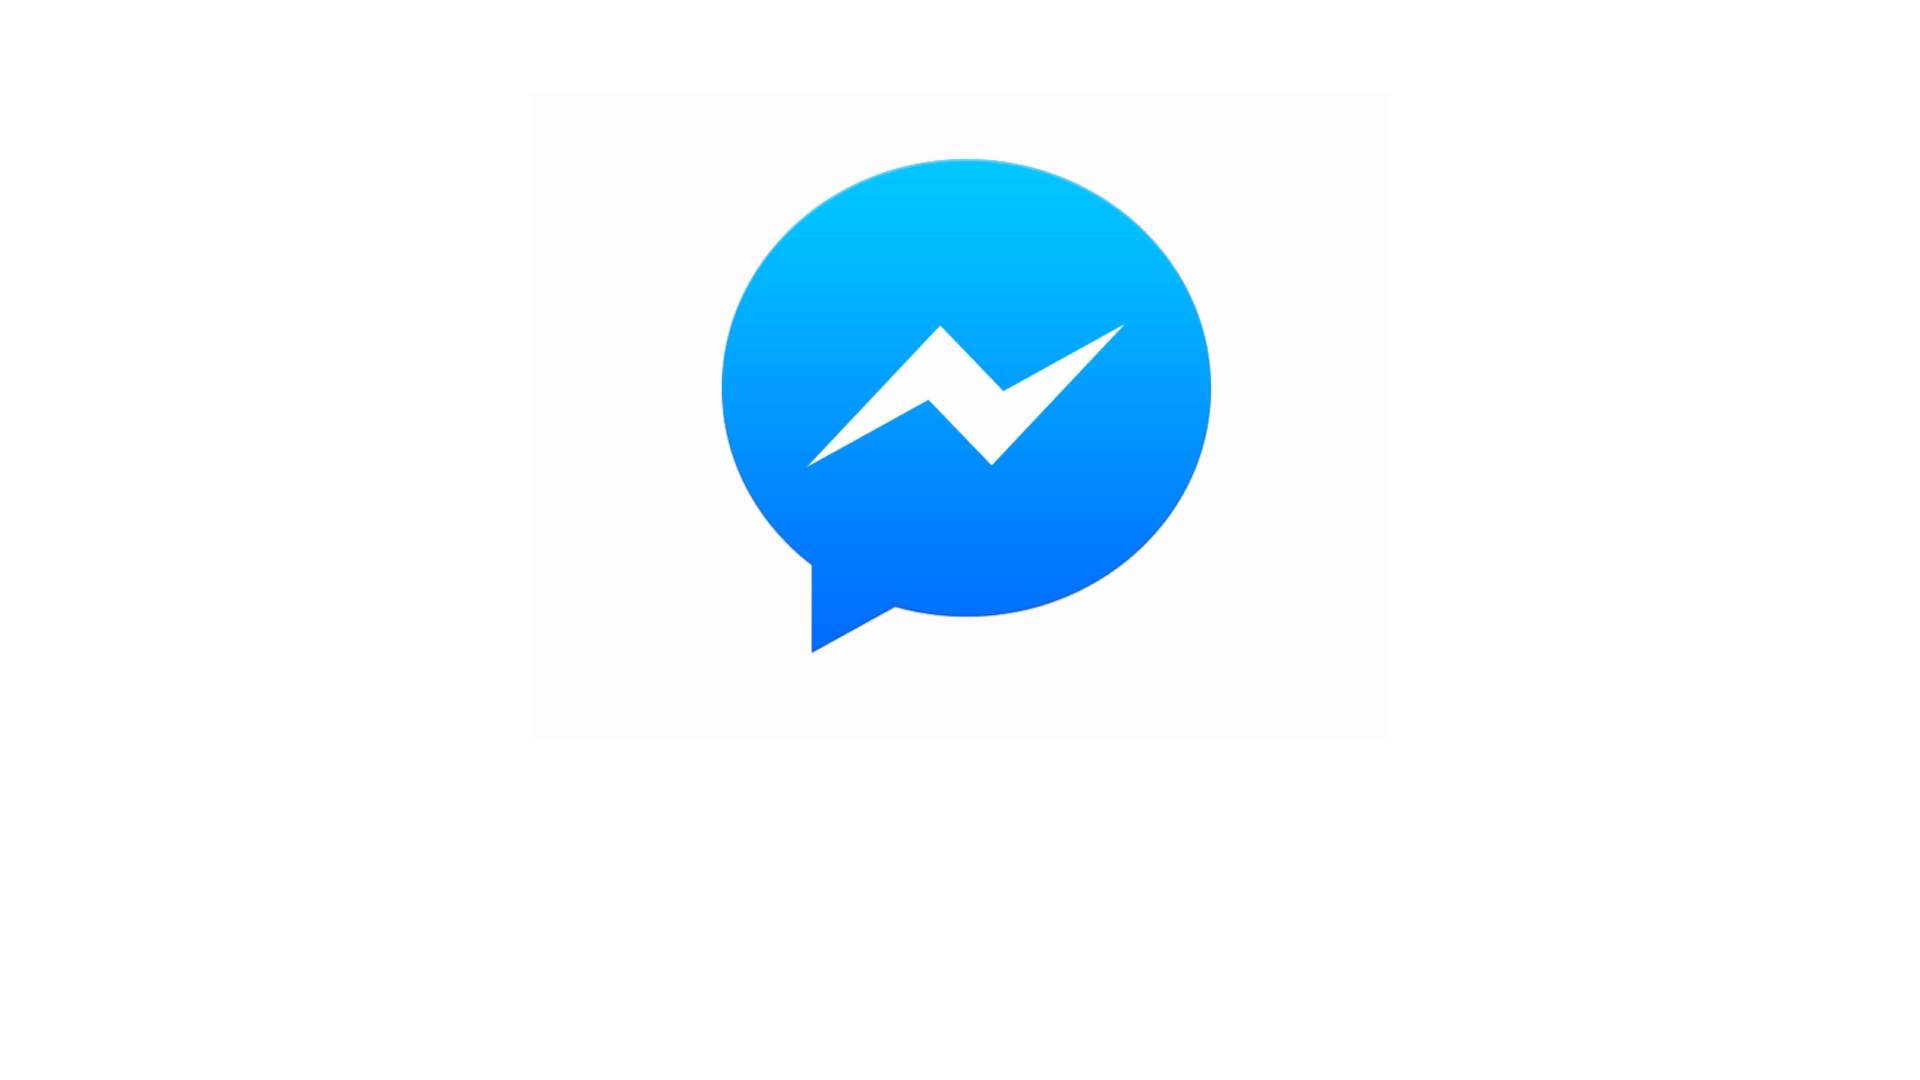 Facebook Messenger diventa anche piattaforma per i pagamenti - We Are Socia...